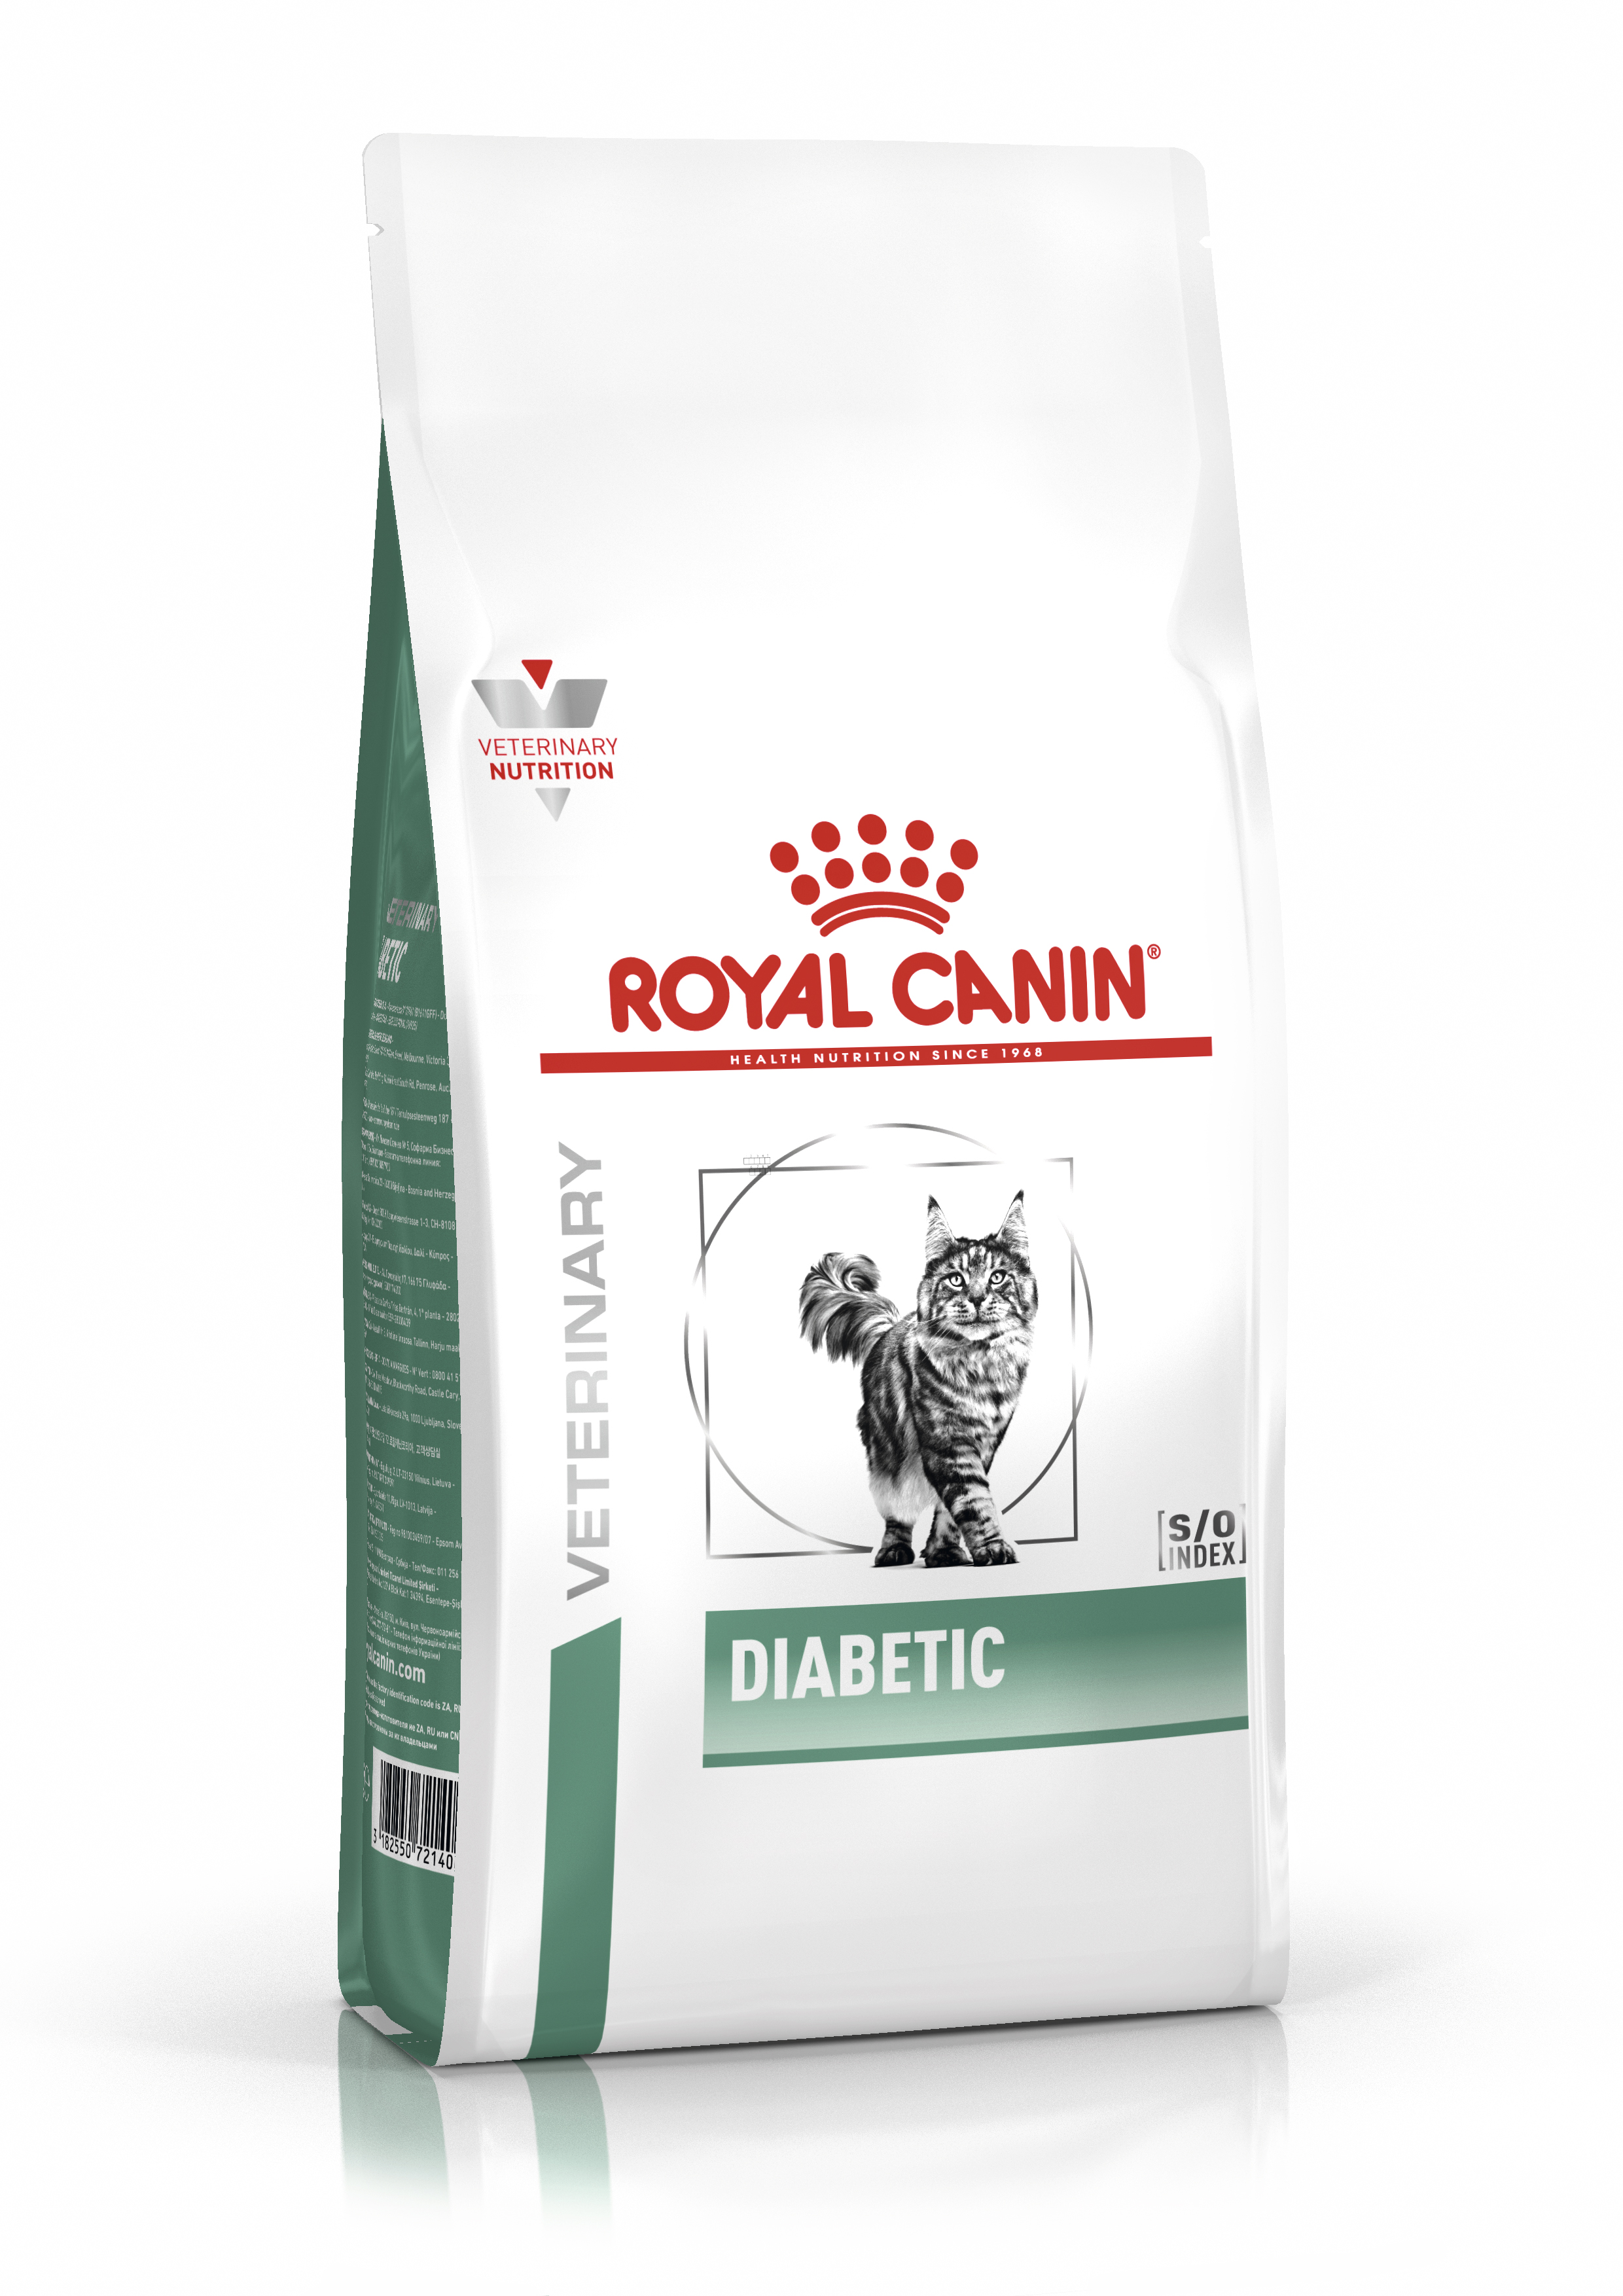 Diabetic Kering Royal Canin